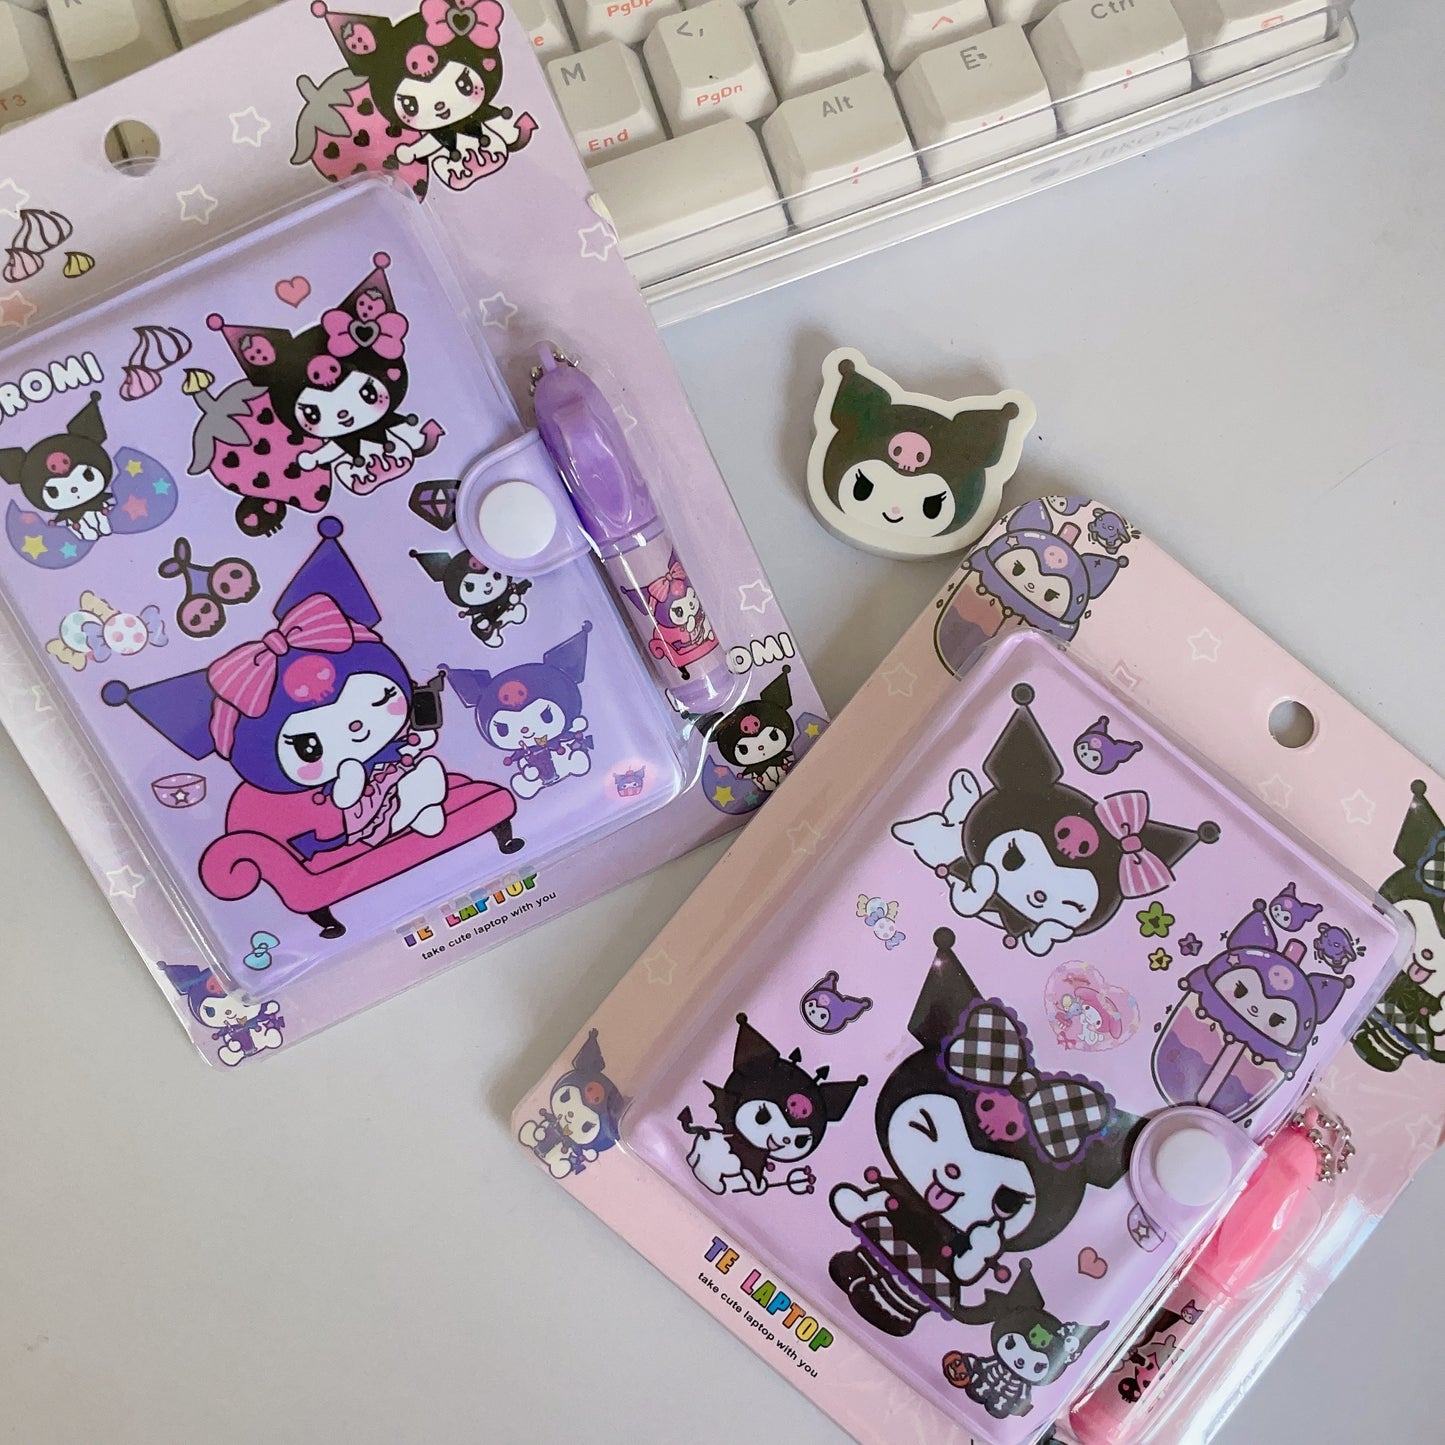 Kuromi mini notebook and pen set